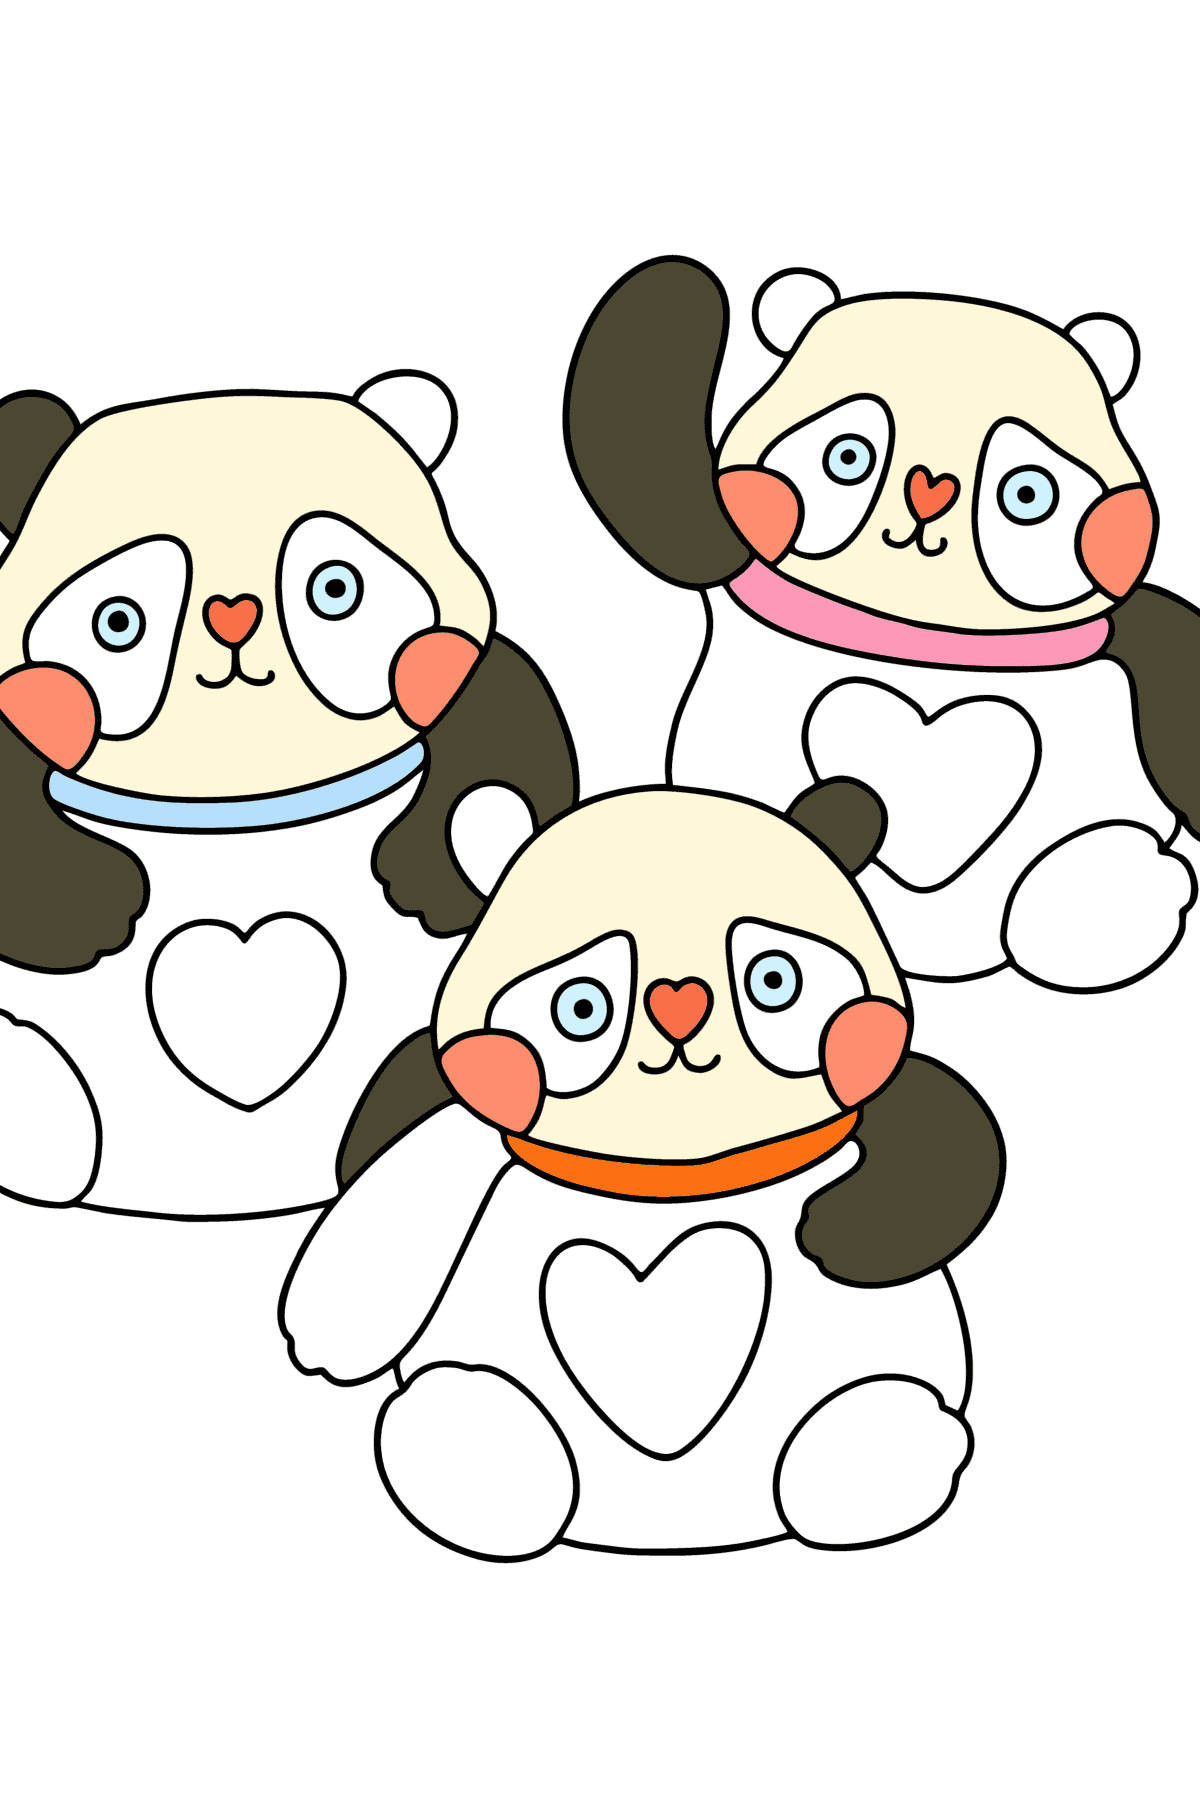 Boyama sayfası kawaii pandalar - Boyamalar çocuklar için